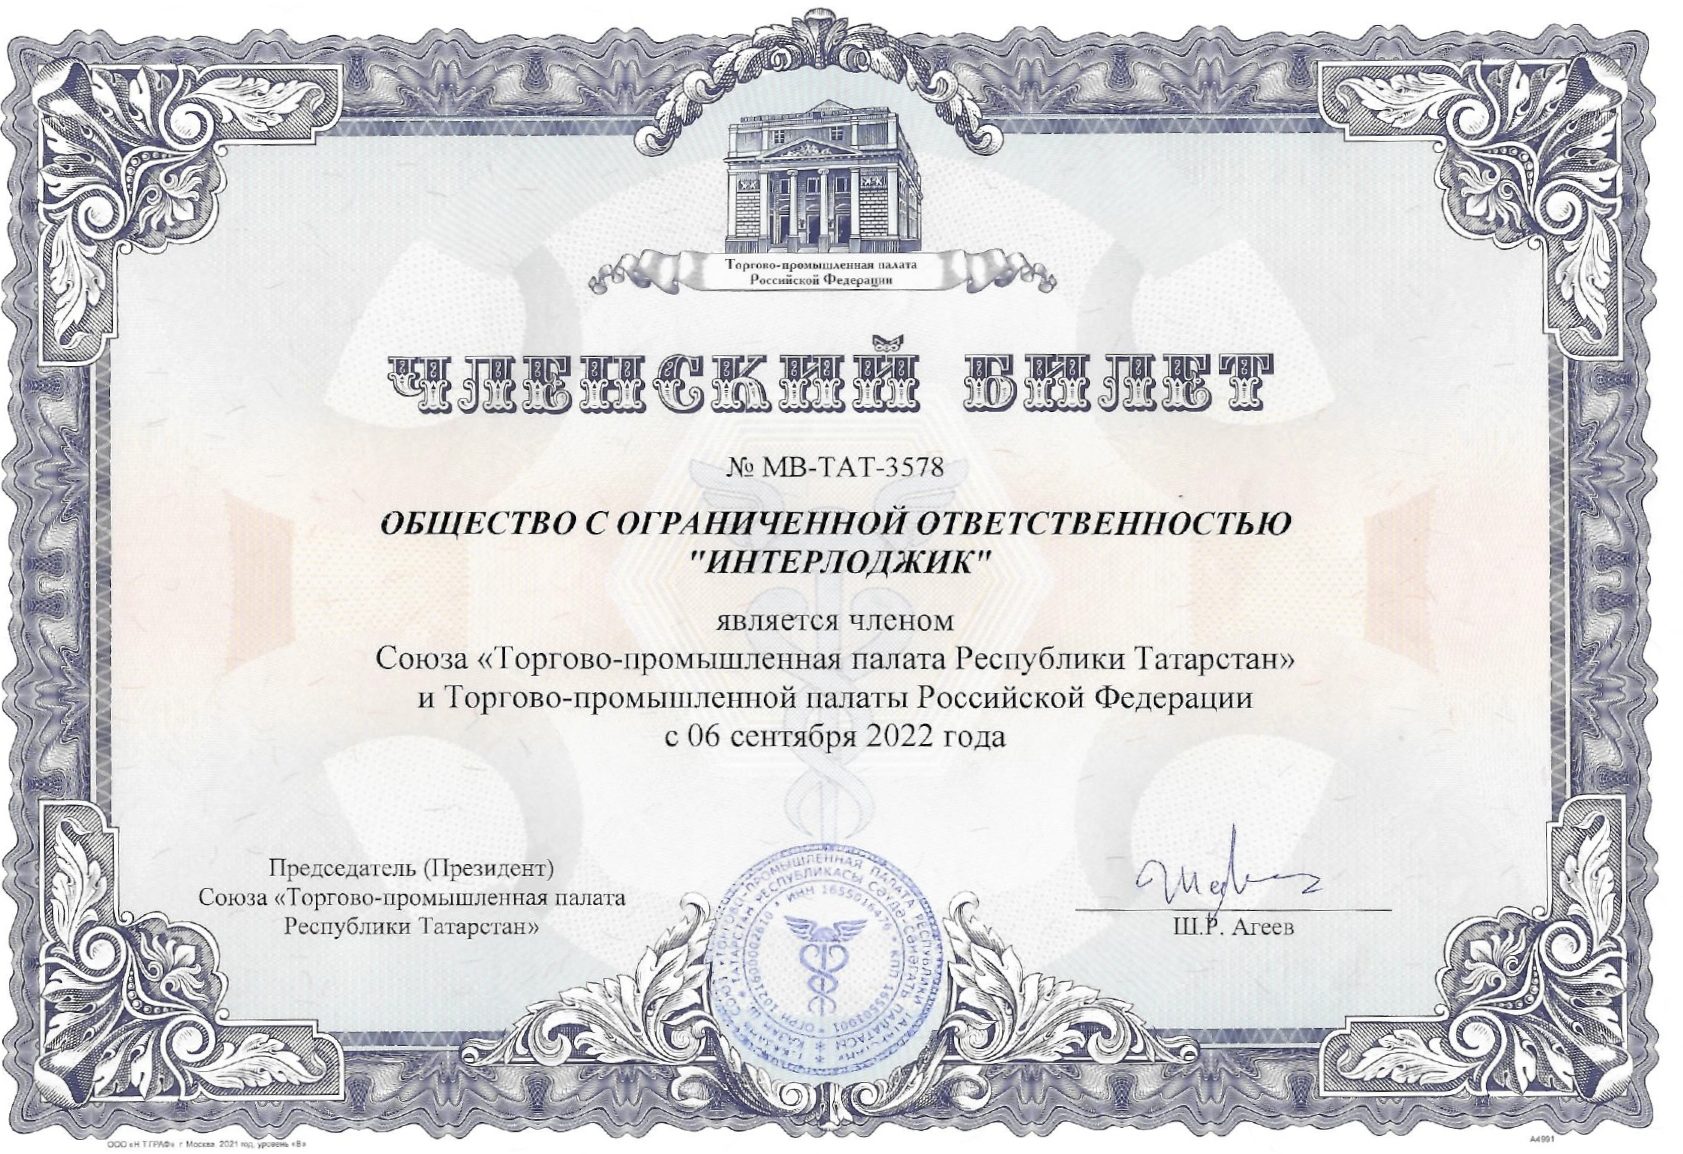 «Interlogic» — член Союза «Торгово-промышленной палаты Республики Татарстан» и Торгово-промышленной палаты Российской Федерации